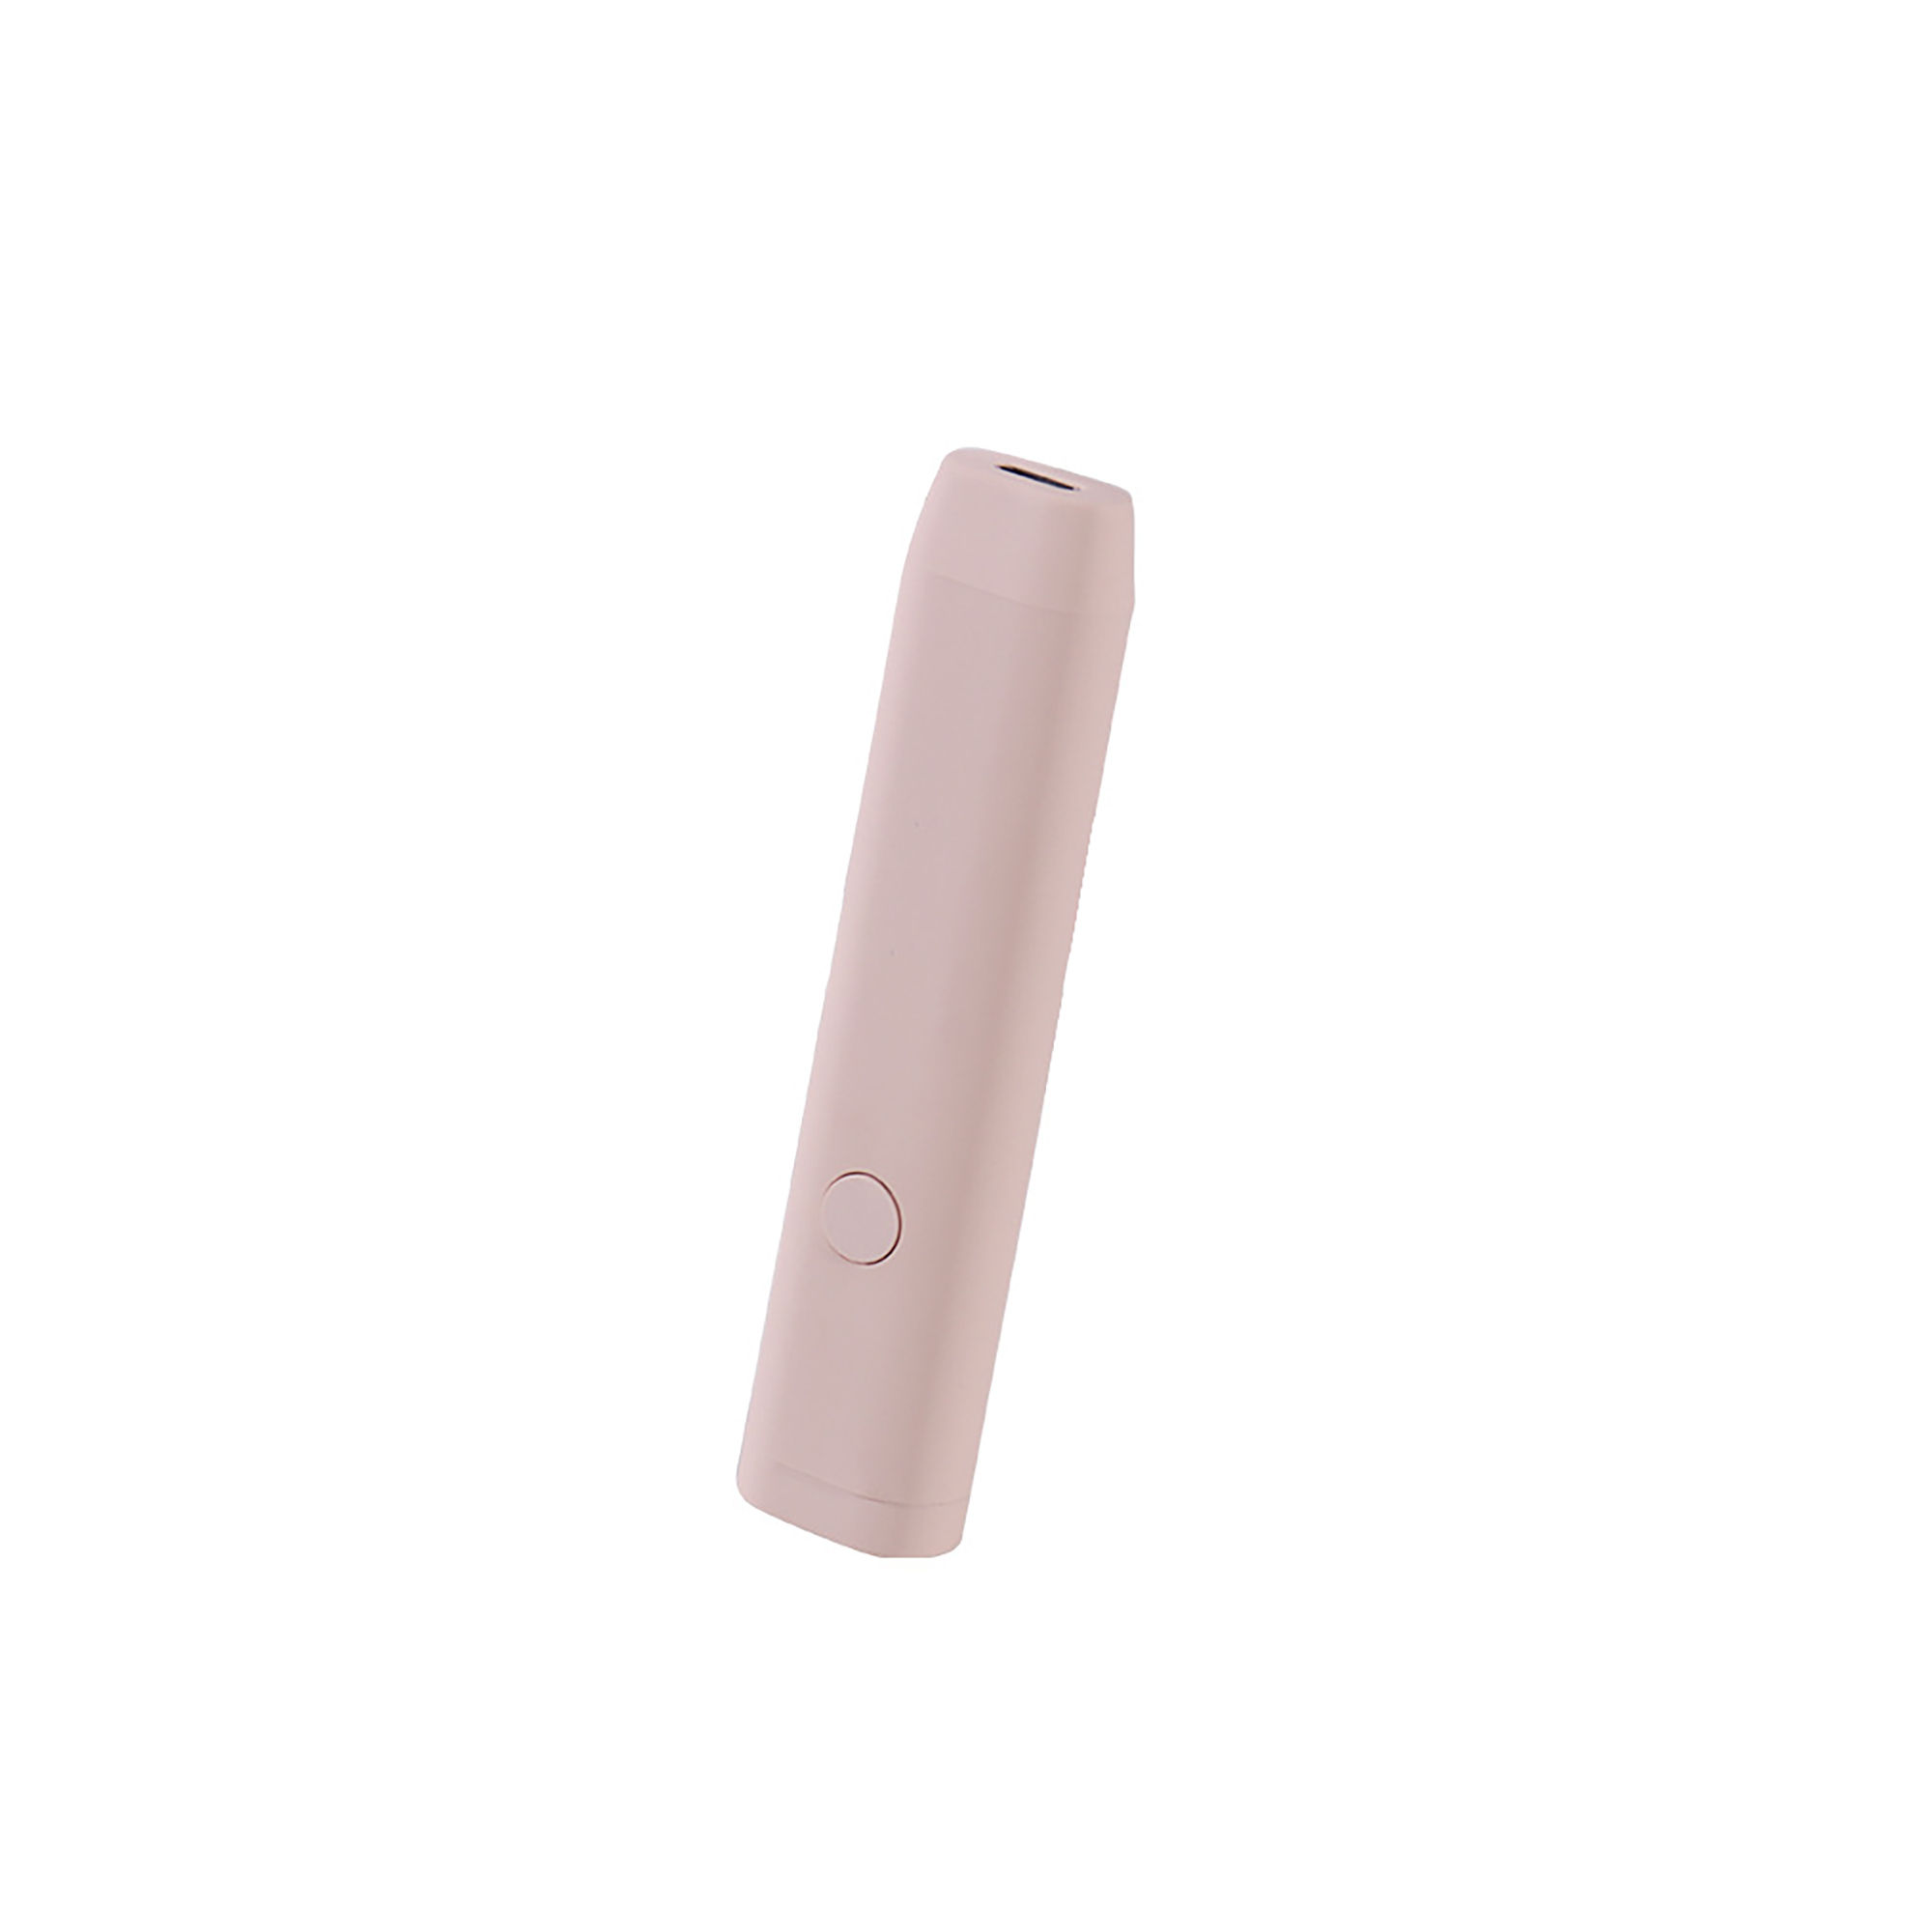 Ультрафиолетовый фонарик TH-004 (розовый)